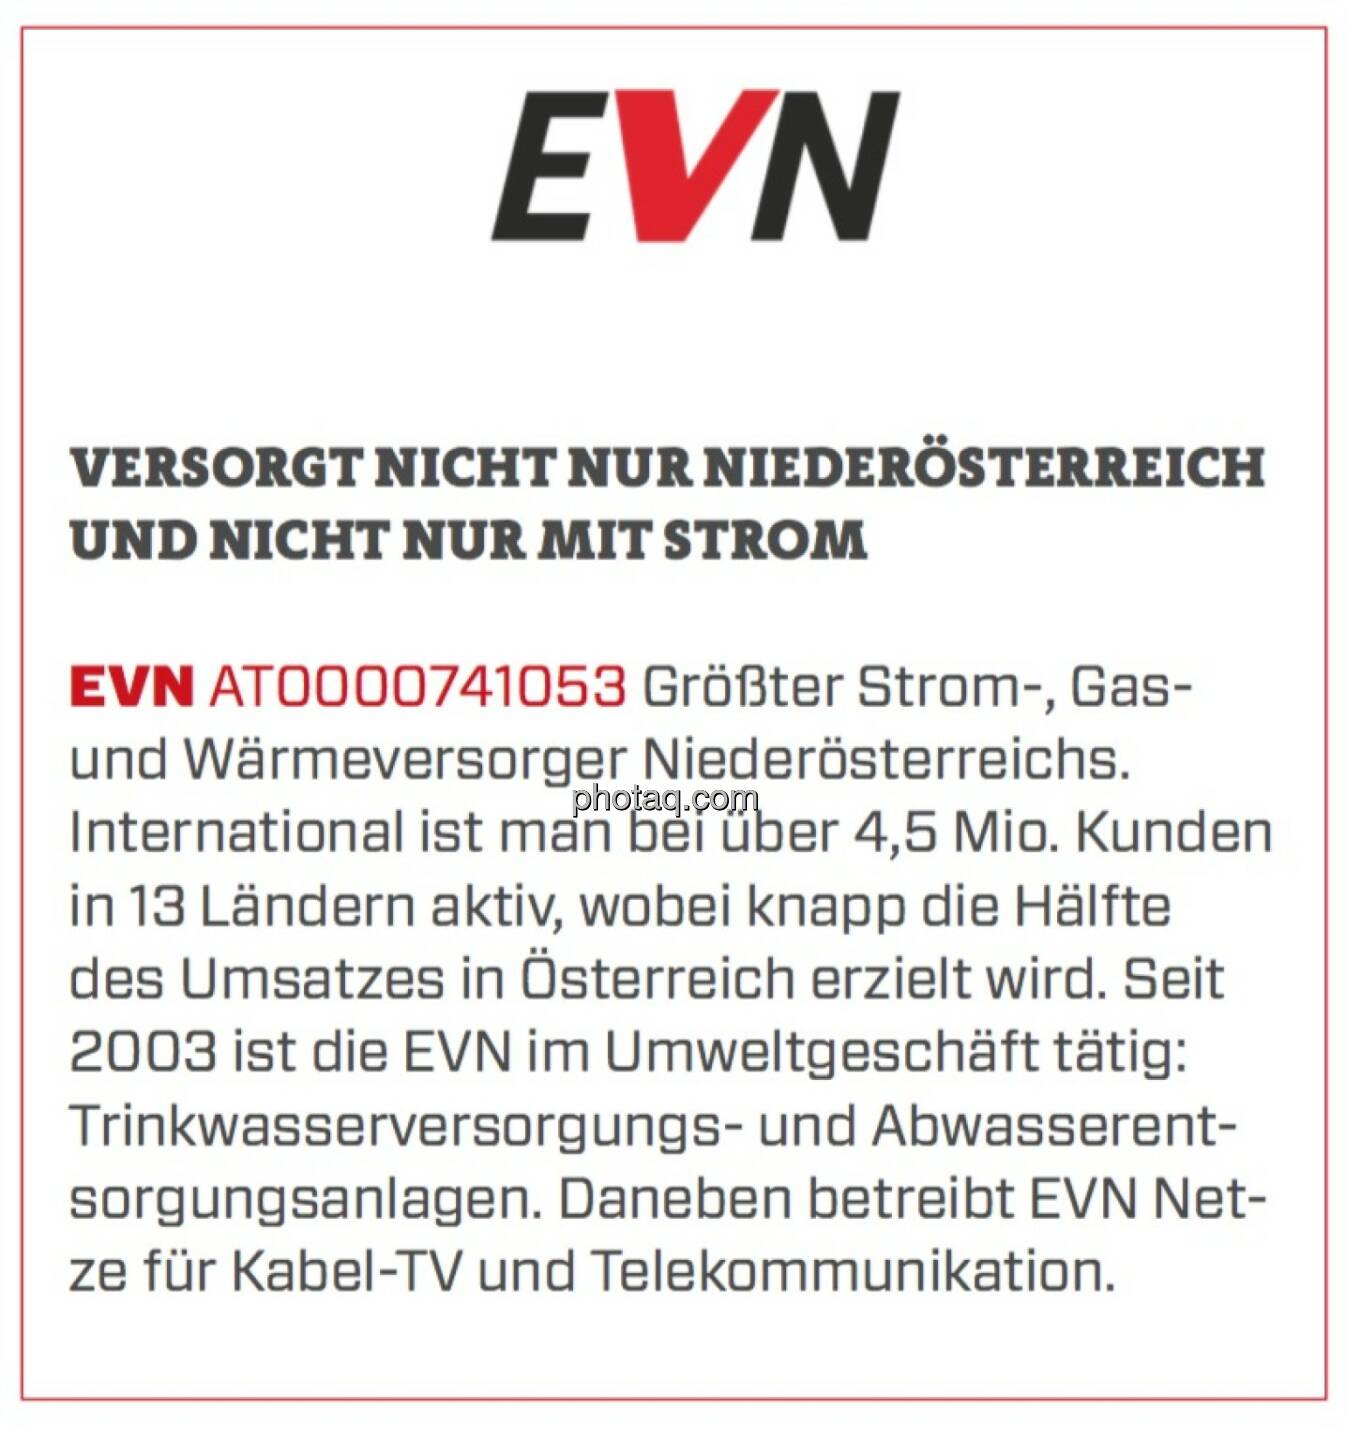 EVN - Versorgt nicht nur Niederösterreich und nicht nur mit Strom: Größter Strom-, Gas- und Wärmeversorger Niederösterreichs. International ist man bei über 4,5 Mio. Kunden in 13 Ländern aktiv, wobei knapp die Hälfte des Umsatzes in Österreich erzielt wird. Seit 2003 ist die EVN im Umweltgeschäft tätig: Trinkwasserversorgungs- und Abwasserentsorgungsanlagen. Daneben betreibt EVN Netze für Kabel-TV und Telekommunikation.